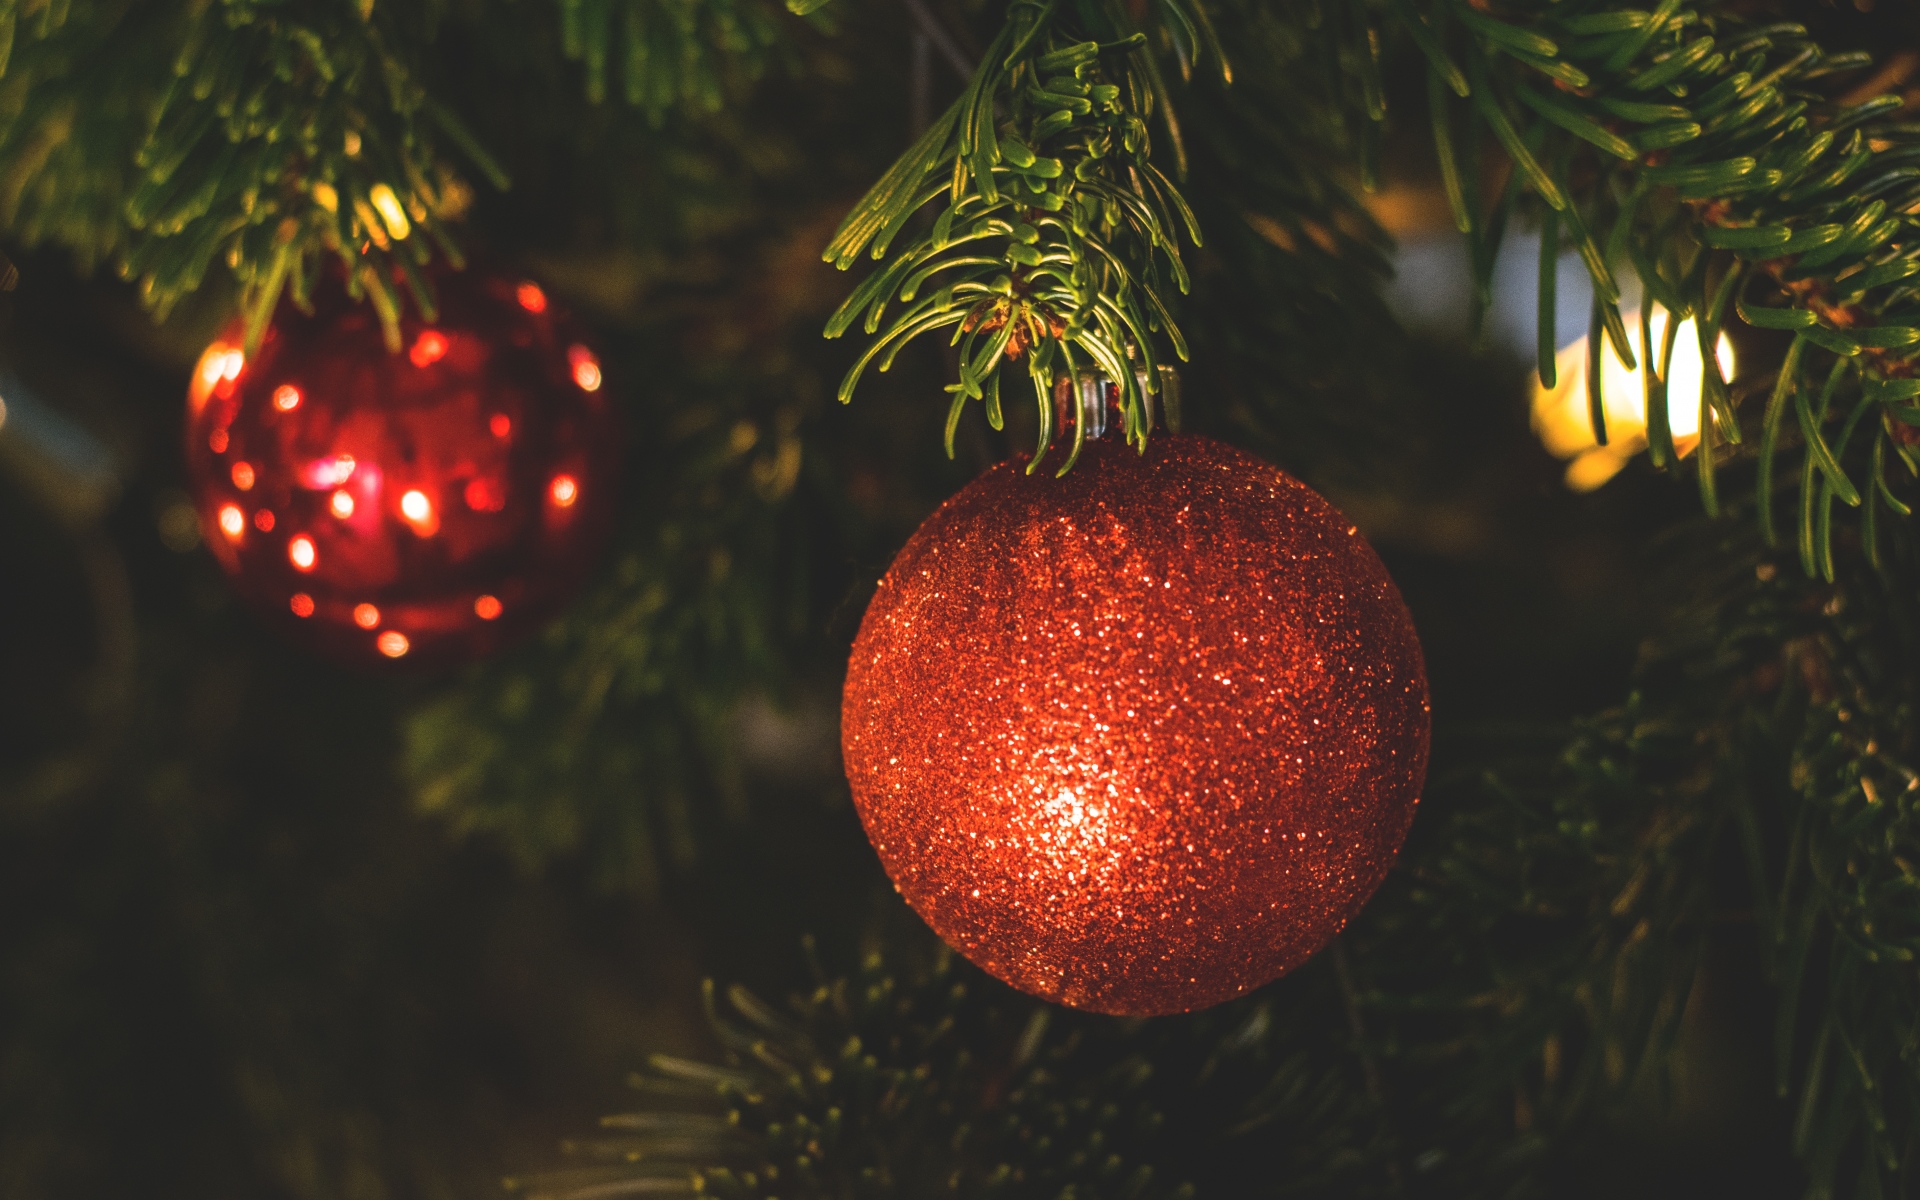 Картинки Дерево игрушка, ветка, ель, рождество, новый год фото и обои на рабочий стол